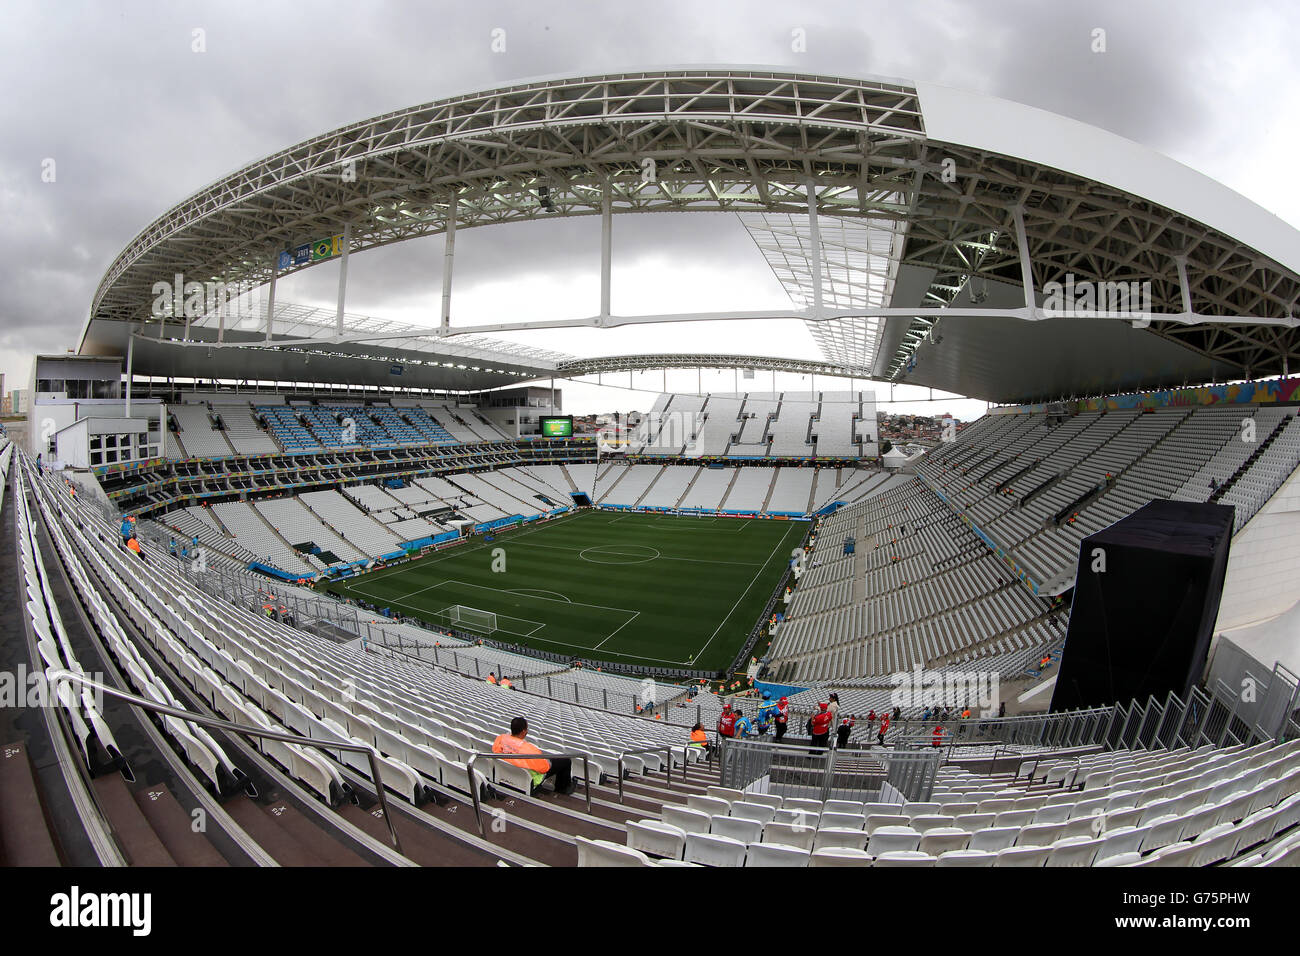 Fútbol - Copa Mundial de la FIFA 2014 - Semi Final - Países Bajos contra Argentina - Arena de Sao Paulo. Vista general de gran angular de la Arena de Sao Paulo Foto de stock